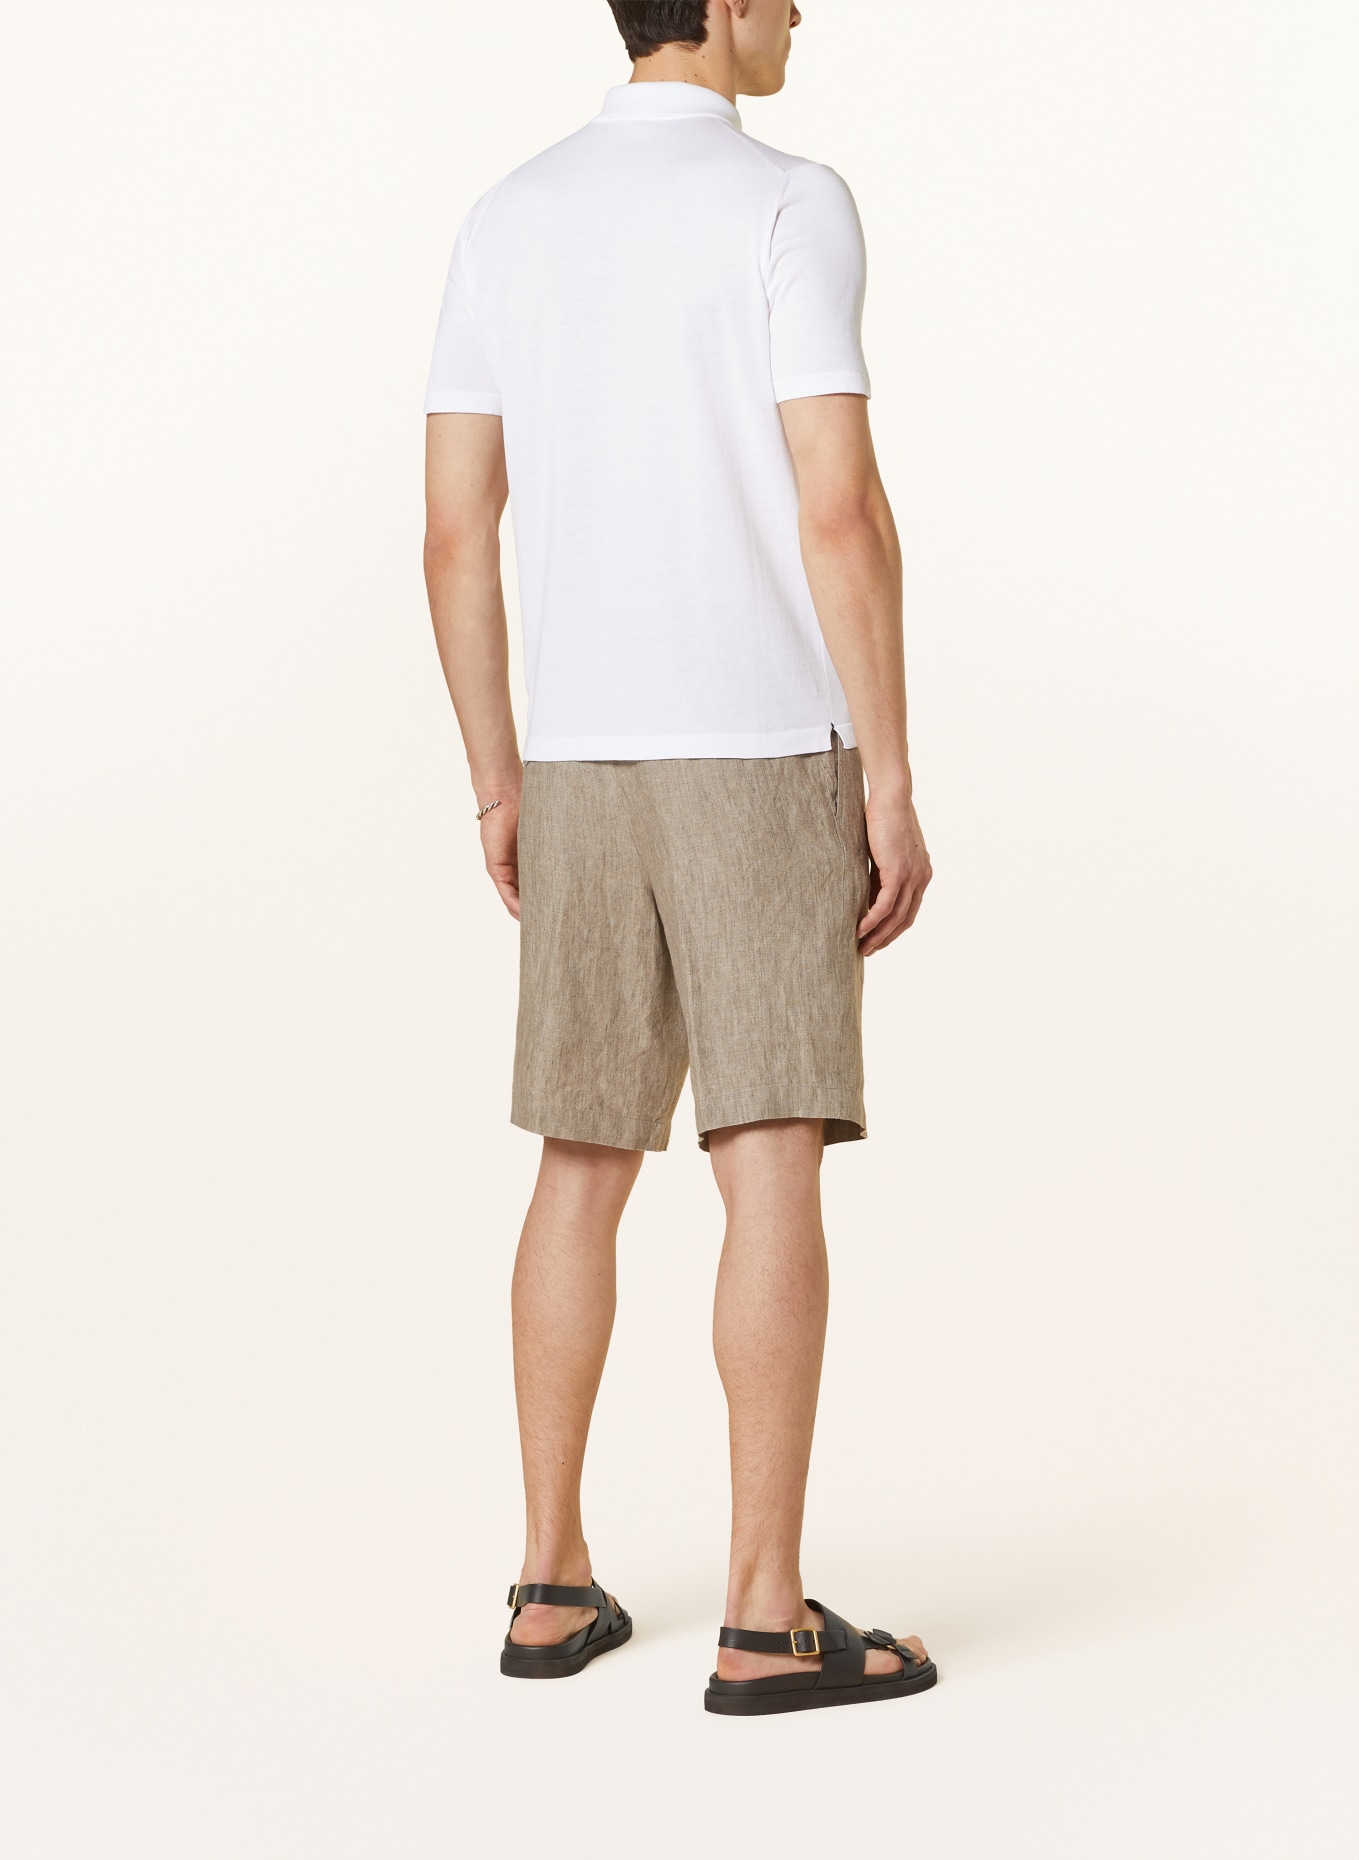 FIORONI Strick-Poloshirt, Farbe: WEISS (Bild 3)